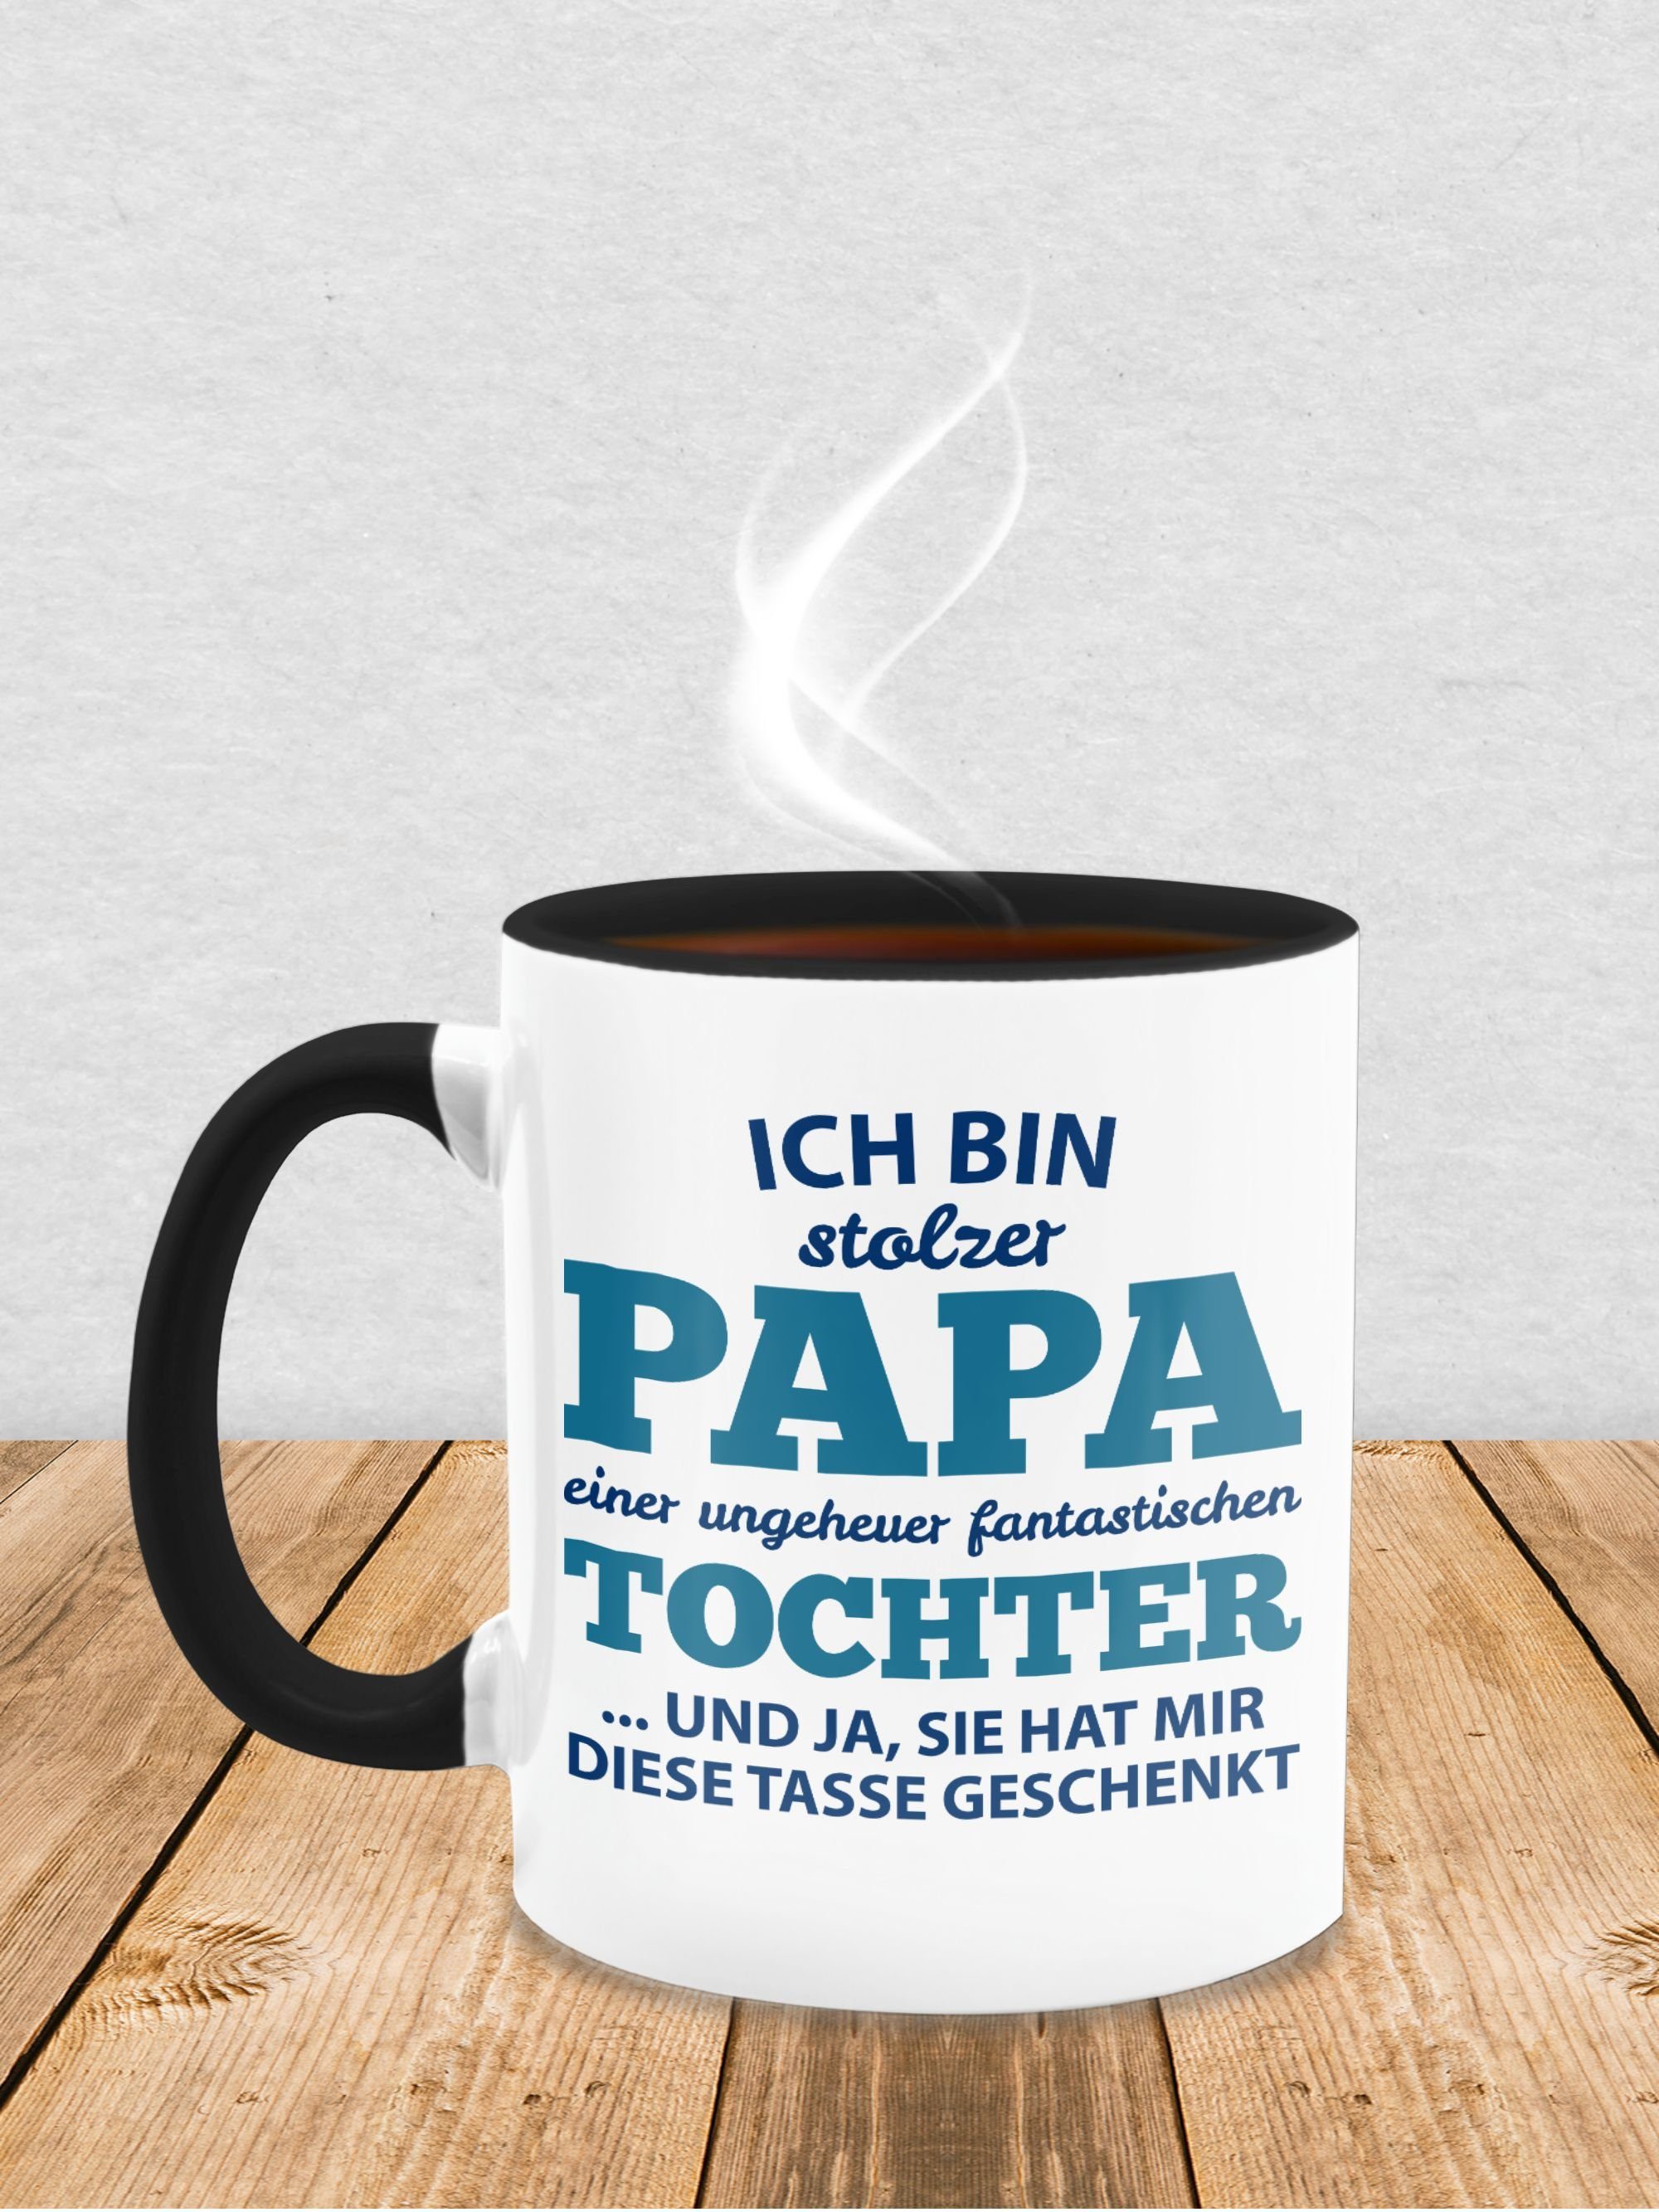 Tochter Schwarz Vatertag Tasse fantastischen Papa 2 Kaffeetasse Keramik, Stolzer einer Geschenk Tasse, Shirtracer